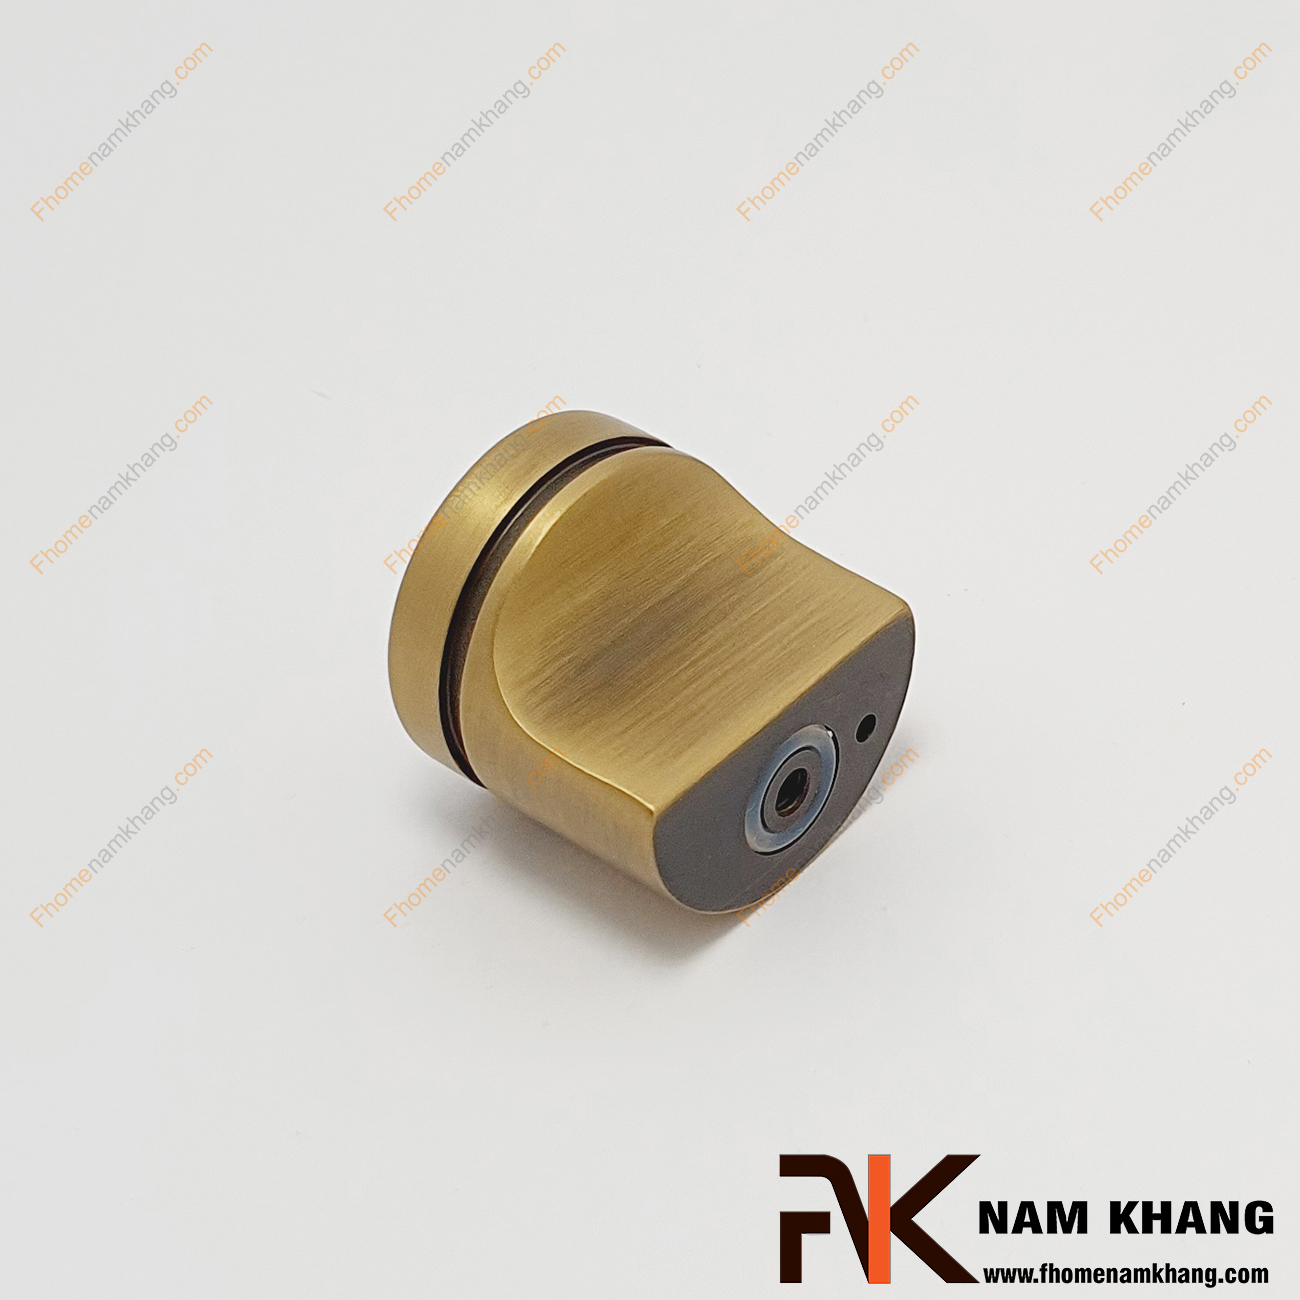 Núm cửa tủ dạng tròn bằng đồng NK279A-RD, là một sản phẩm núm tủ nhỏ gọn thiết kế dạng trụ tròn và có phần khuyết để cầm nắm dễ dàng hơn.